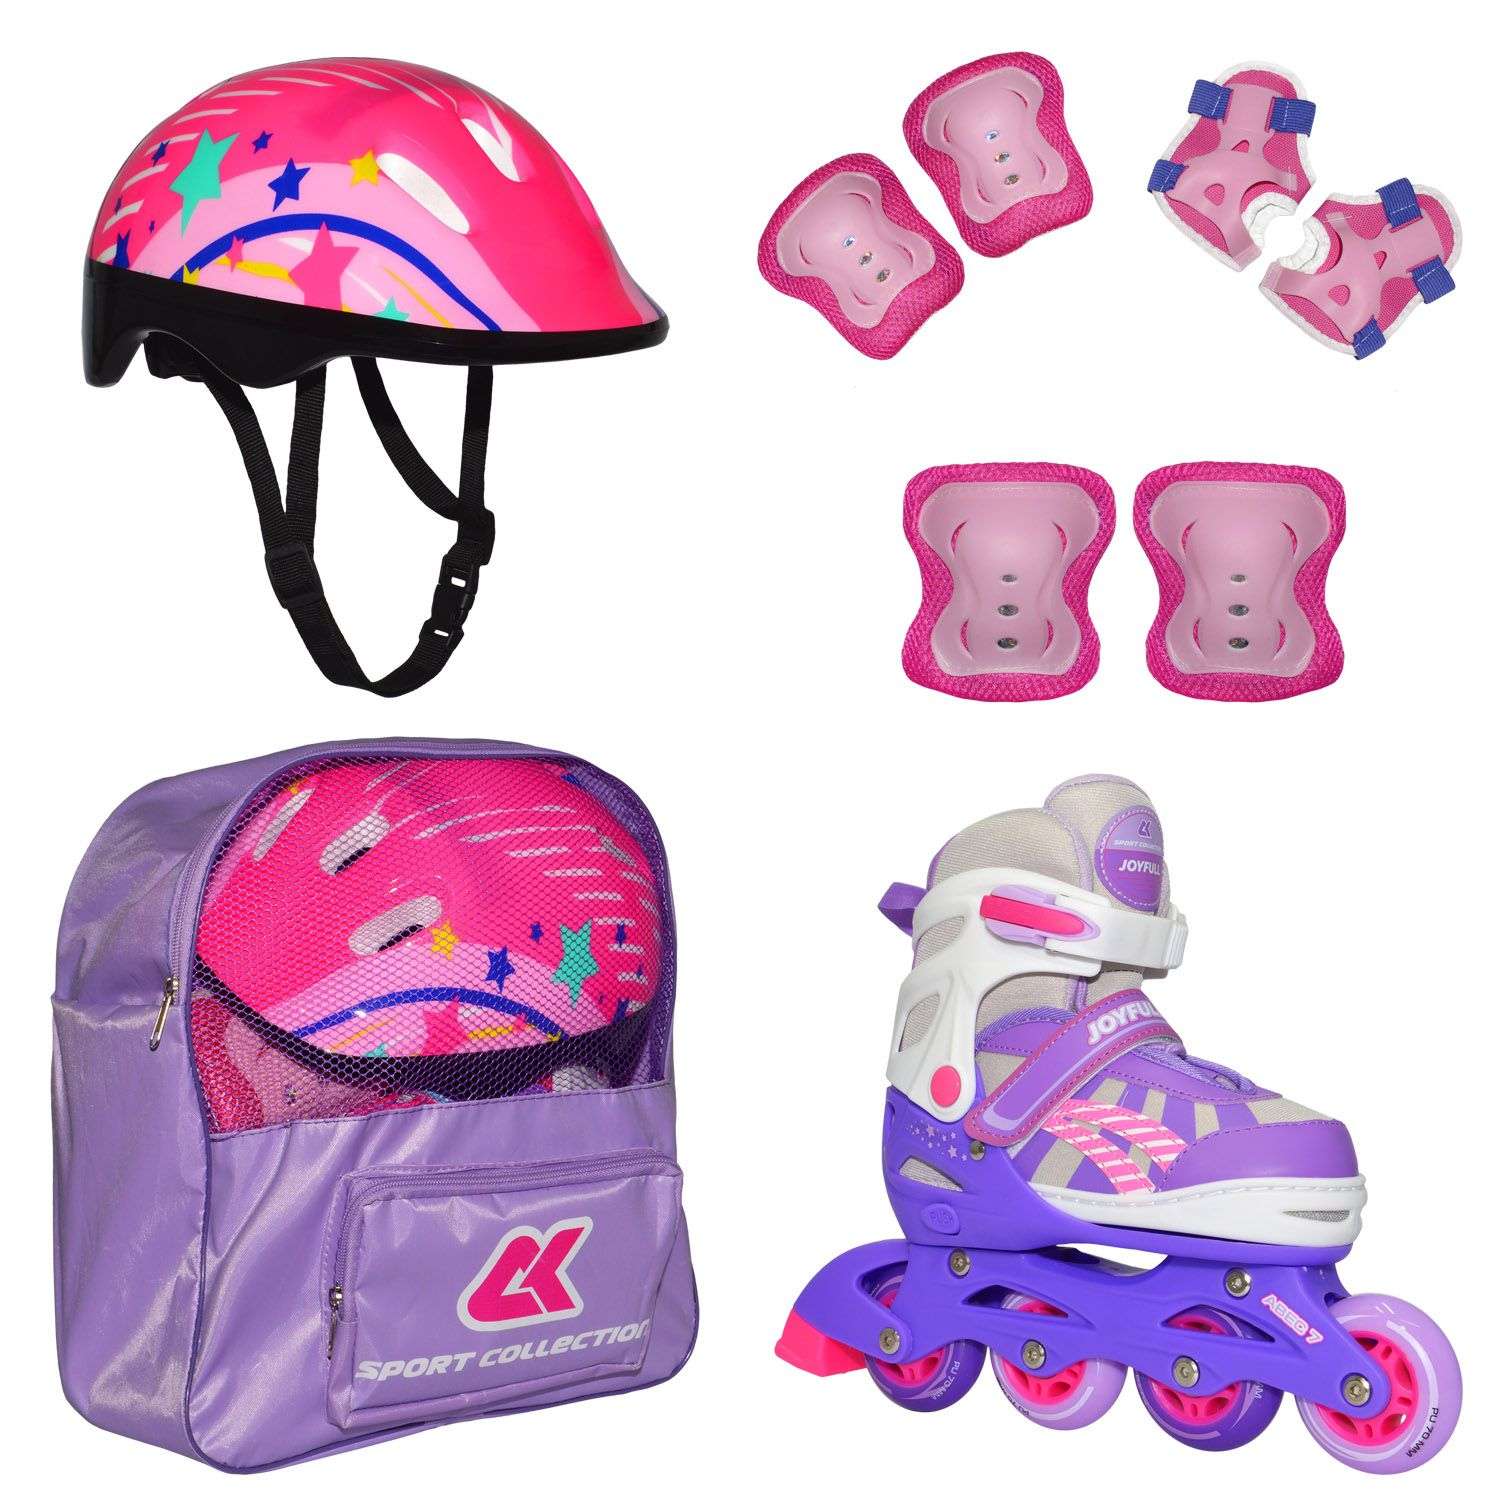 Роликовый комплект Sport Collection в сумке SET JOYFULL Violet ролики р. 29-32 Шлем 50-56 Защита S/M - фото 1